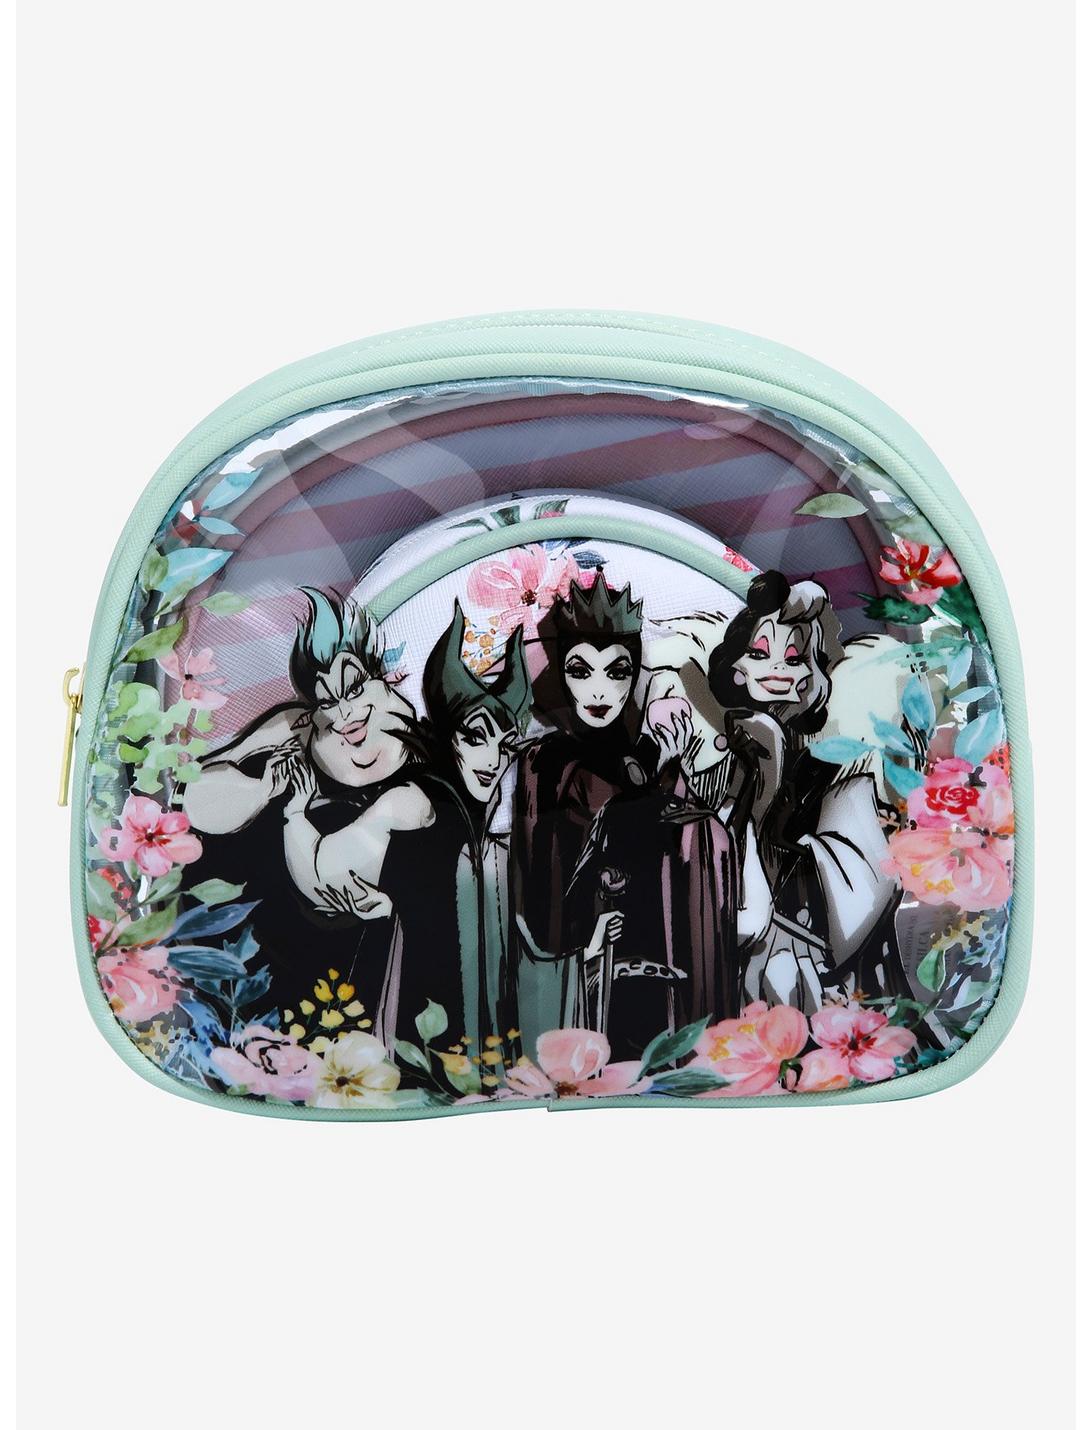 Makeup bag Art Bag Disney Villain Makeup Bag Villians Disney Art Supplies